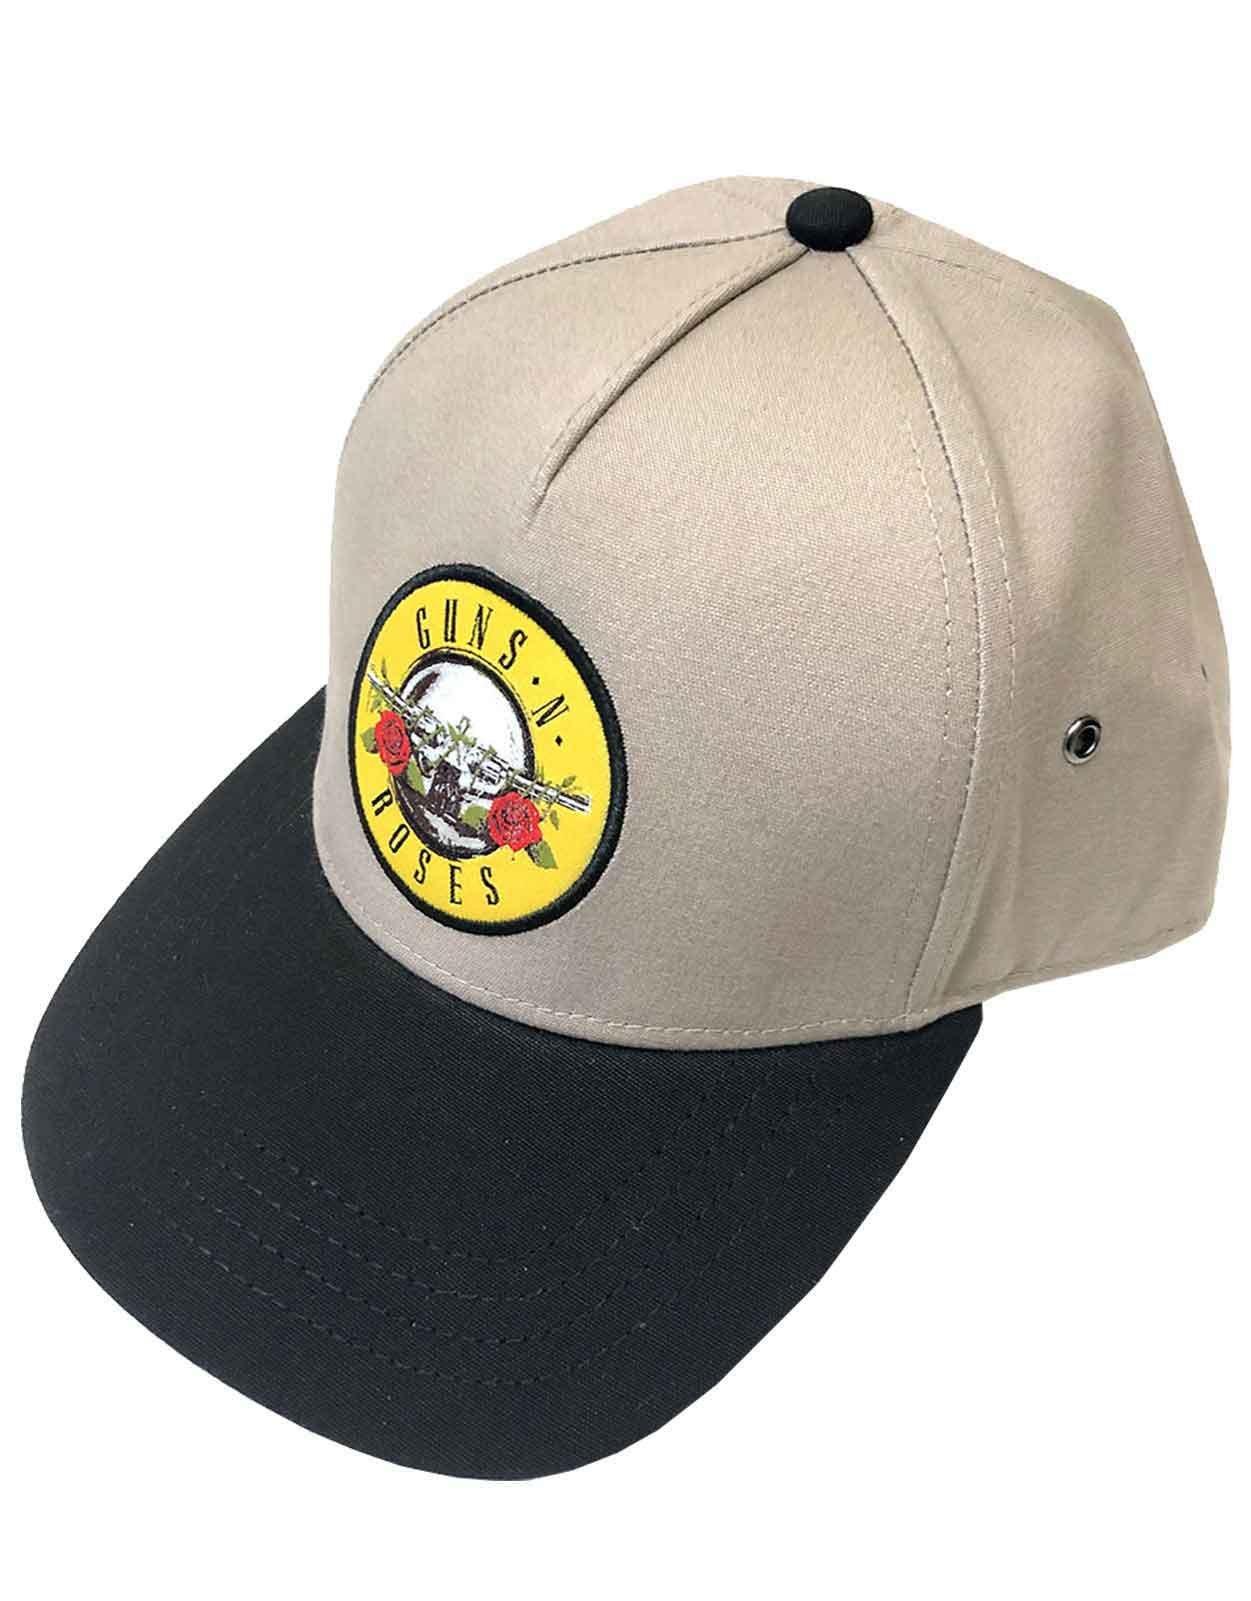 Бейсбольная кепка Snapback с логотипом Circle Classic Band Guns N Roses, коричневый бейсболка кепка камуфляжная с желтым принтом guns n’ roses 88